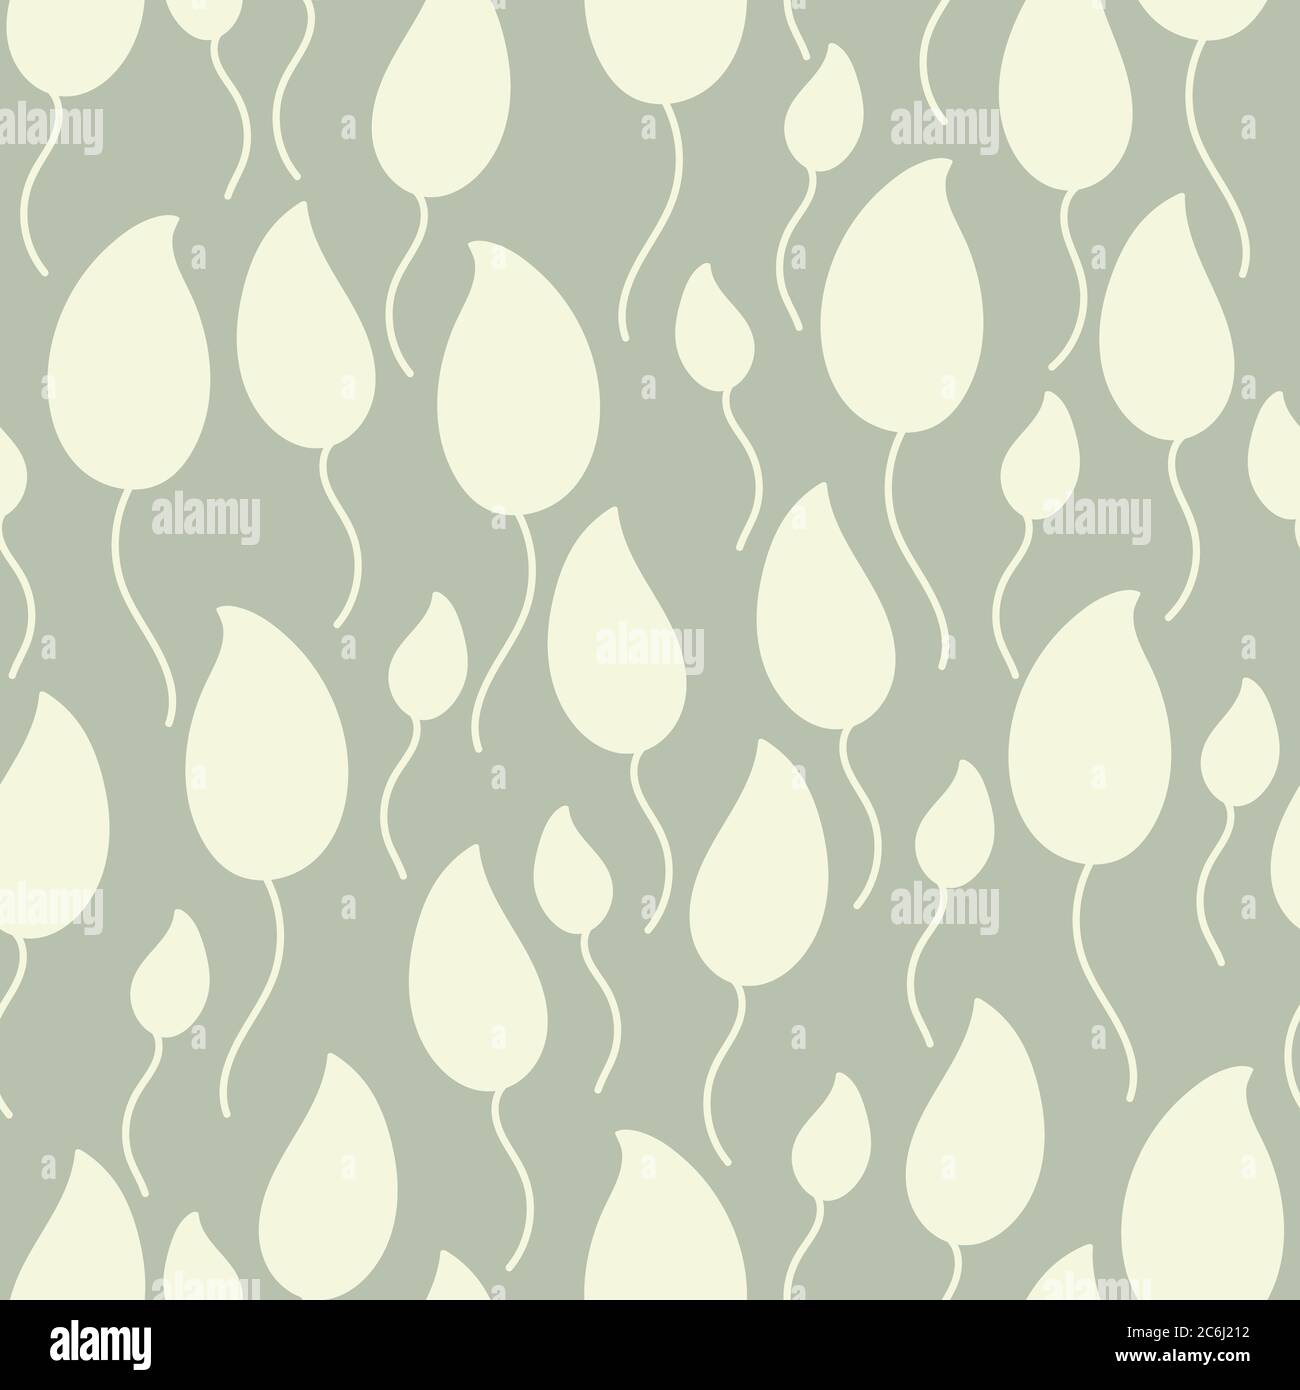 Paisley Vektor Nahtloses Muster-Design für Tapeten, Textilien, Oberflächen, Mode, Hintergrund, Fliesen, stationäre, Wohnkultur, Einrichtung etc. Stock Vektor